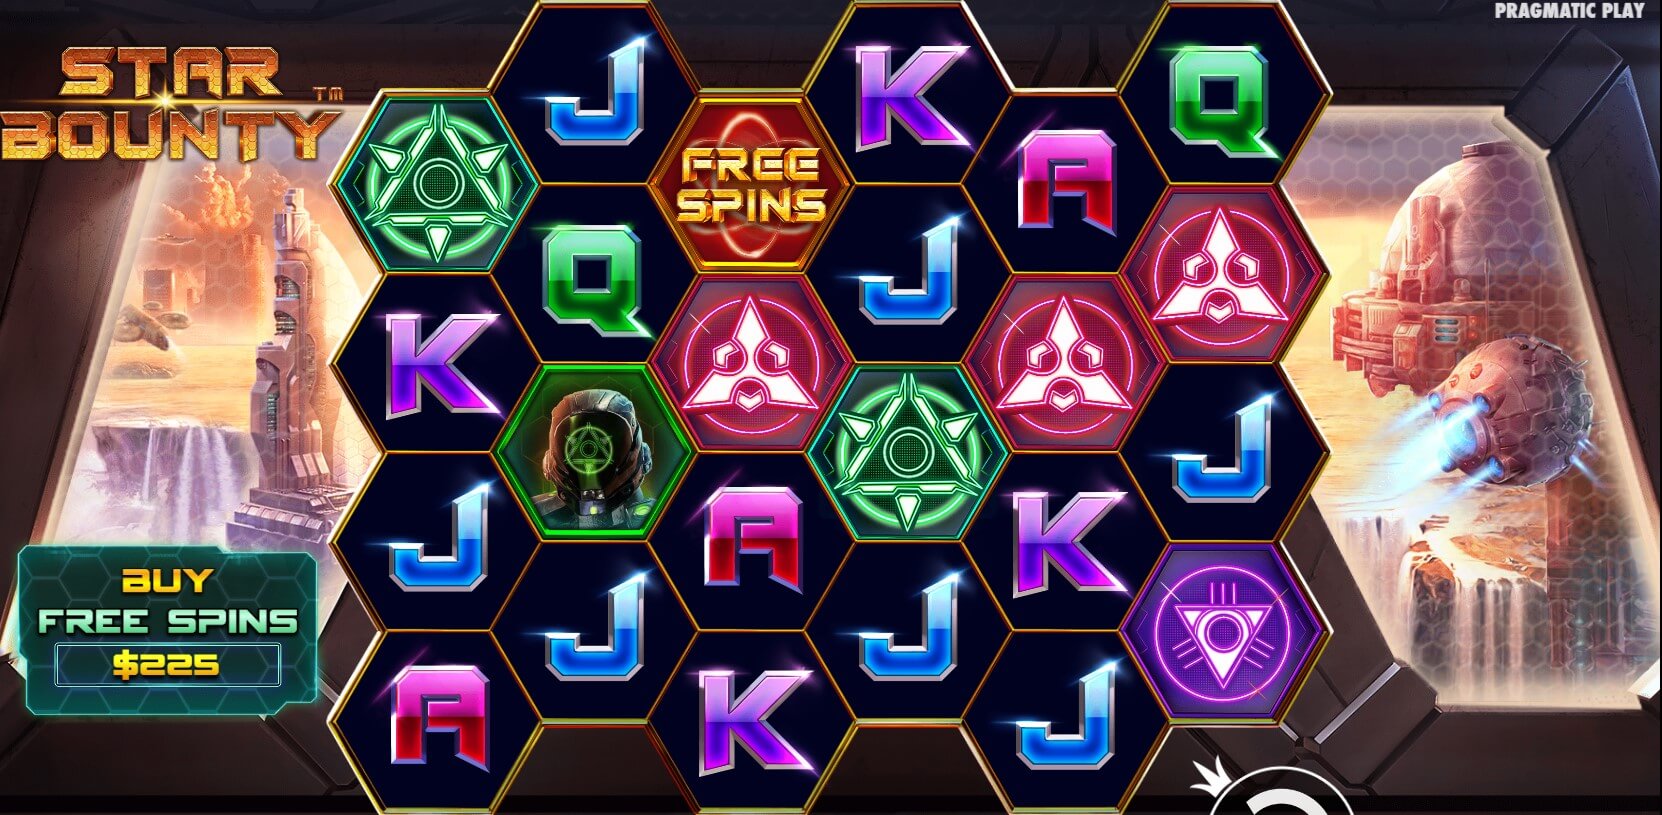 Star Bounty Spielautomaten Bewertung, Walzen und Symbolen